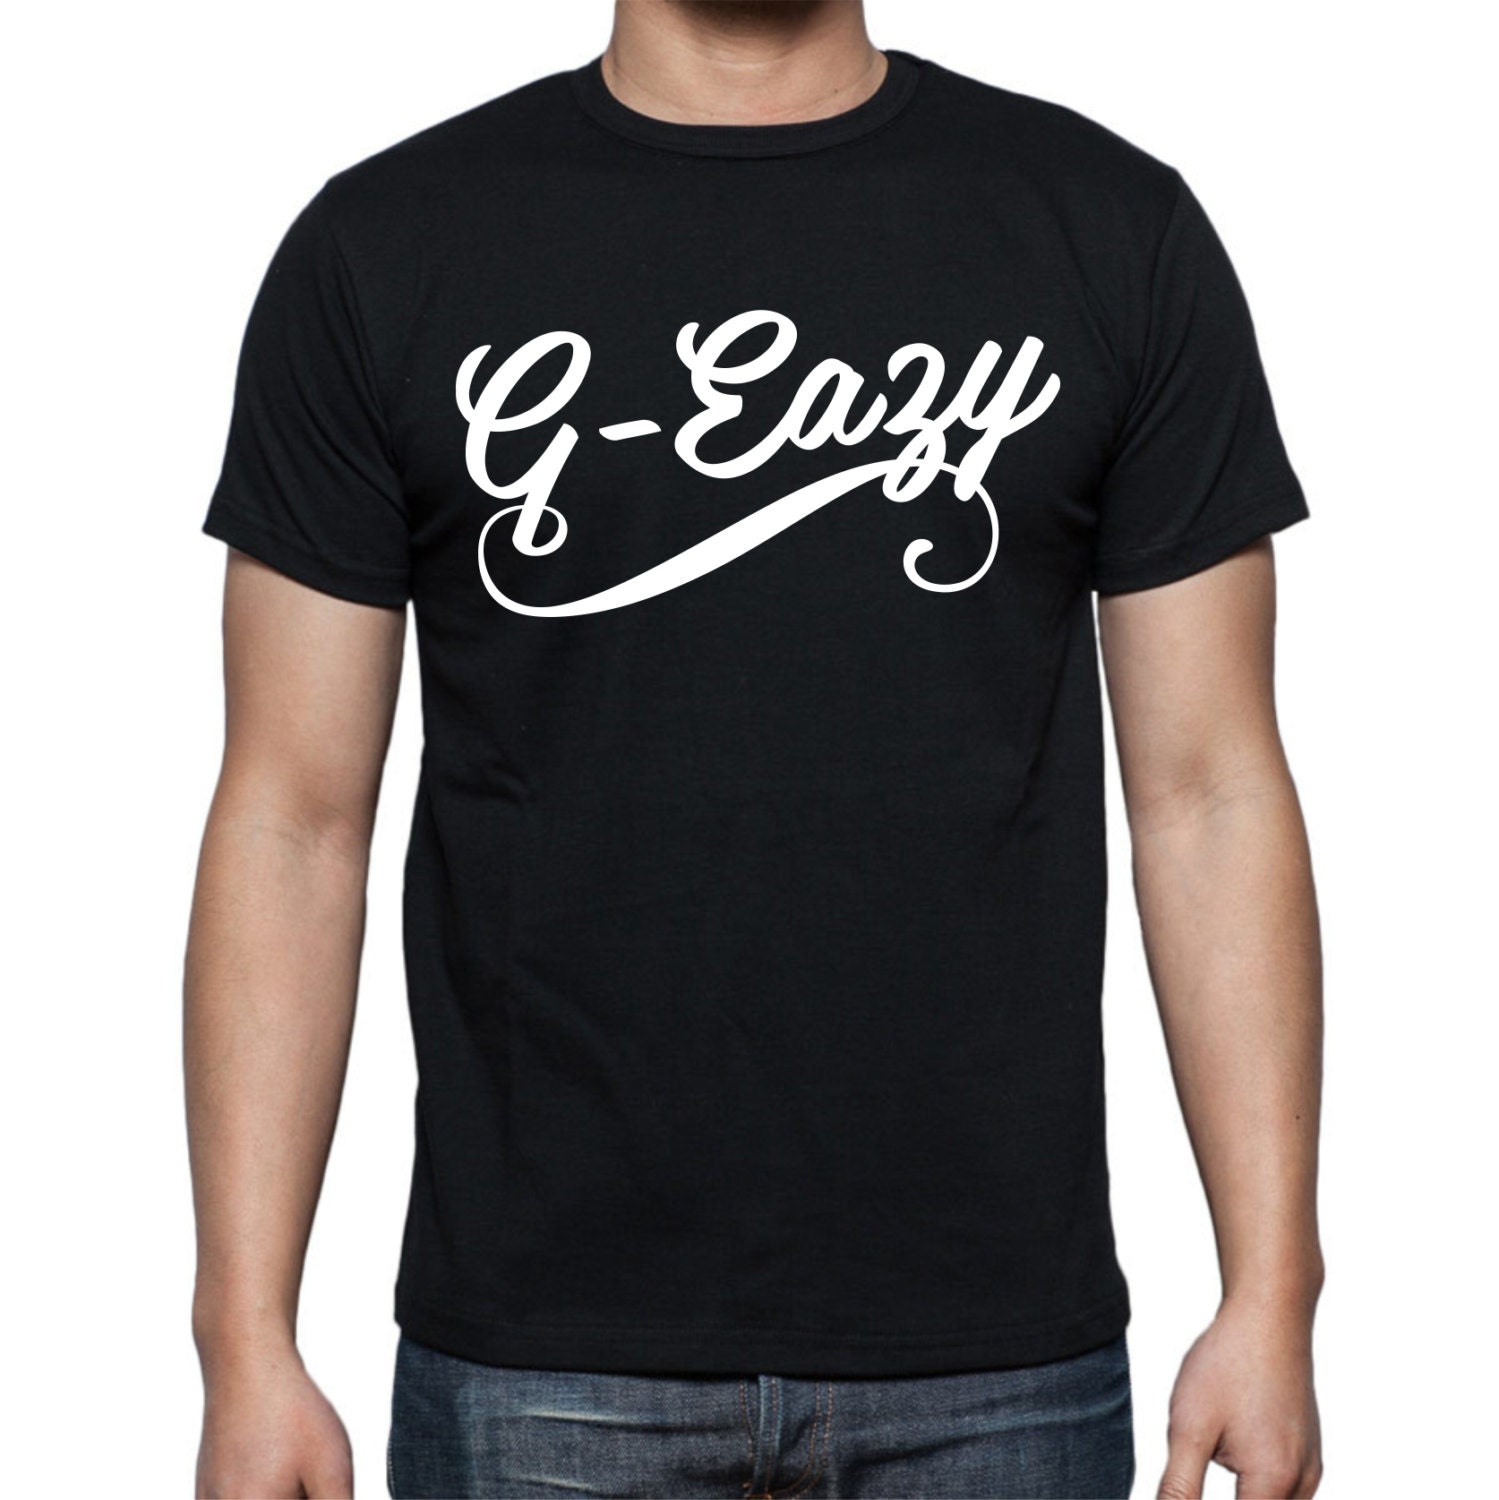 G-Eazy T-shirt by WeCustomOnline7 on Etsy